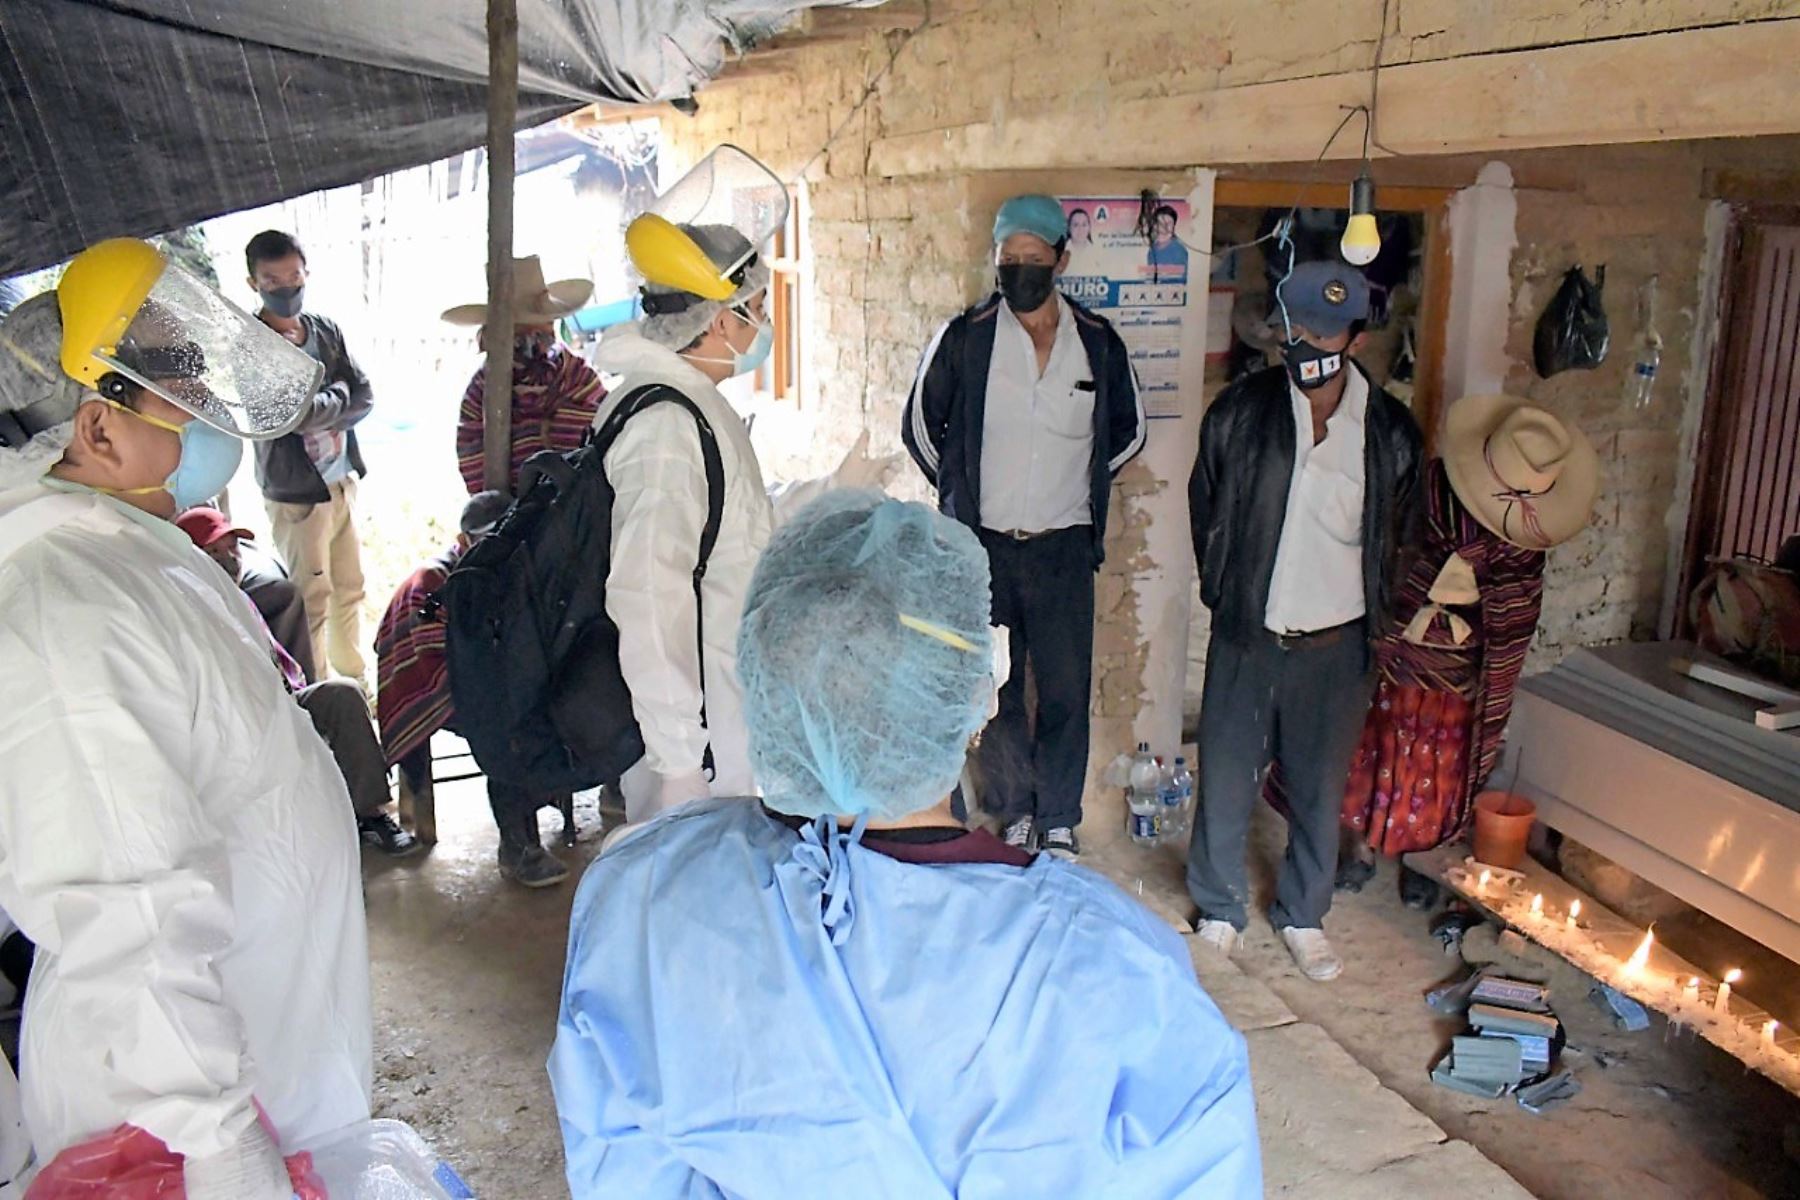 Equipo de intervención en salud llegó hasta el caserío de Lanchipampa, región Lambayeque, para evaluar situación del covid-19. Foto: ANDINA/Difusión